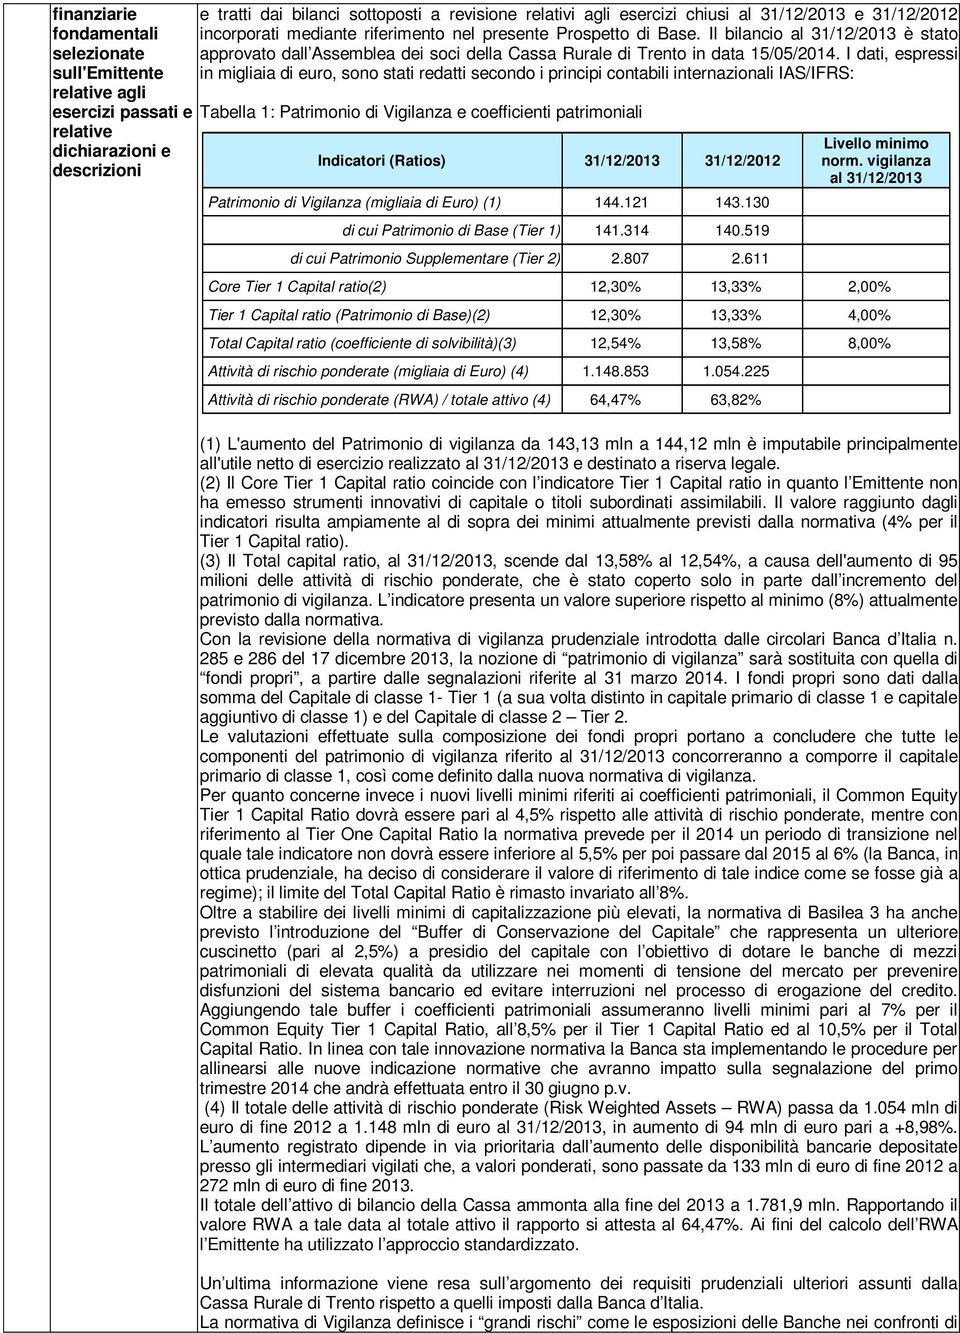 Il bilancio al 31/12/2013 è stato approvato dall Assemblea dei soci della Cassa Rurale di Trento in data 15/05/2014.